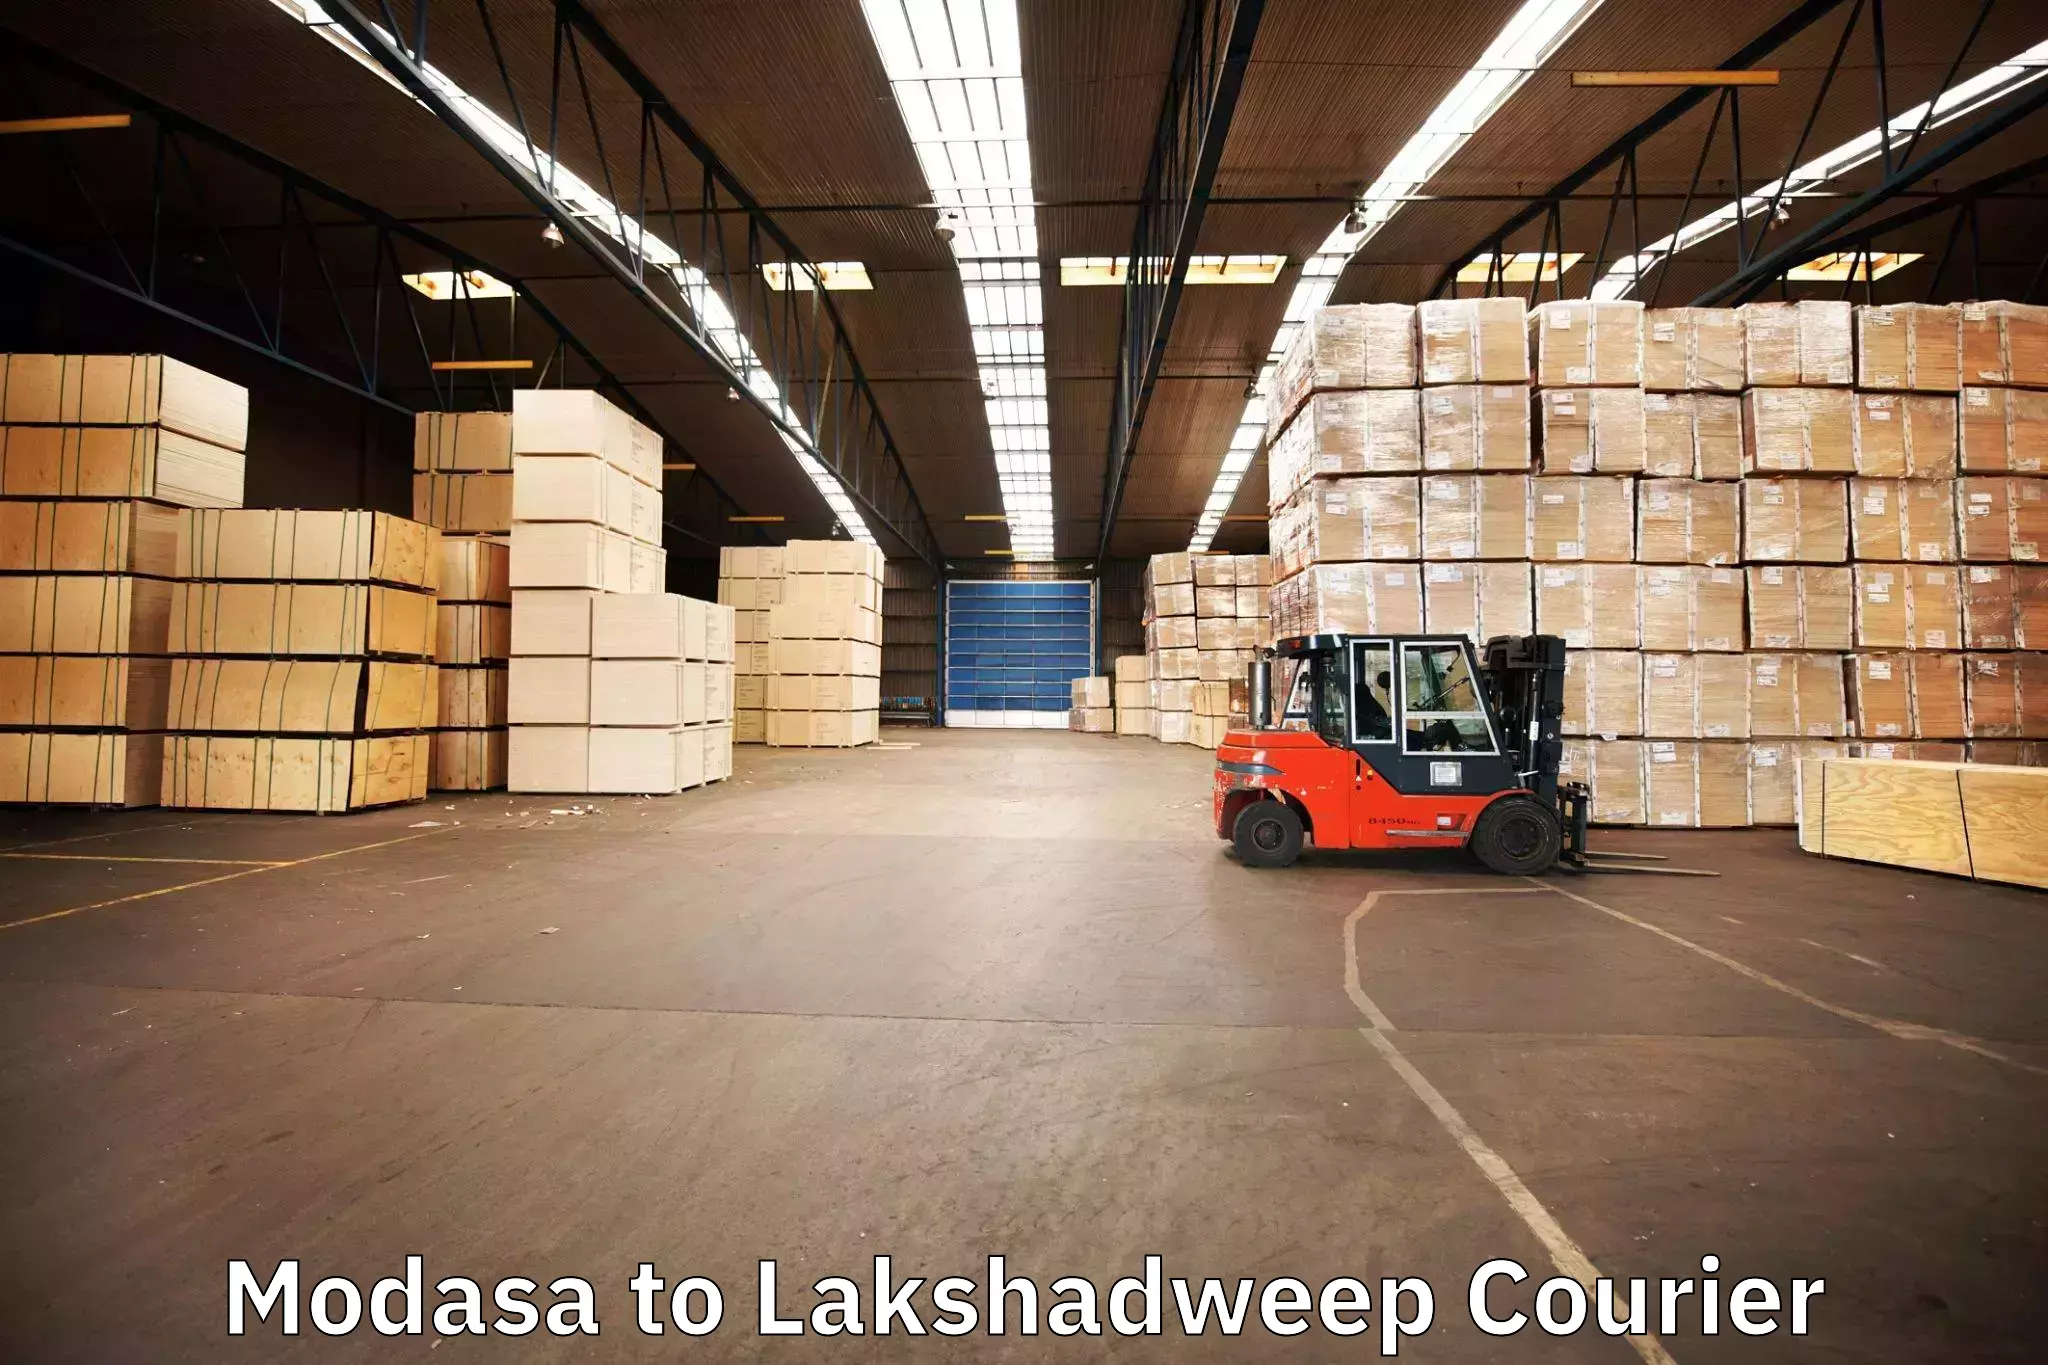 Furniture moving experts Modasa to Lakshadweep